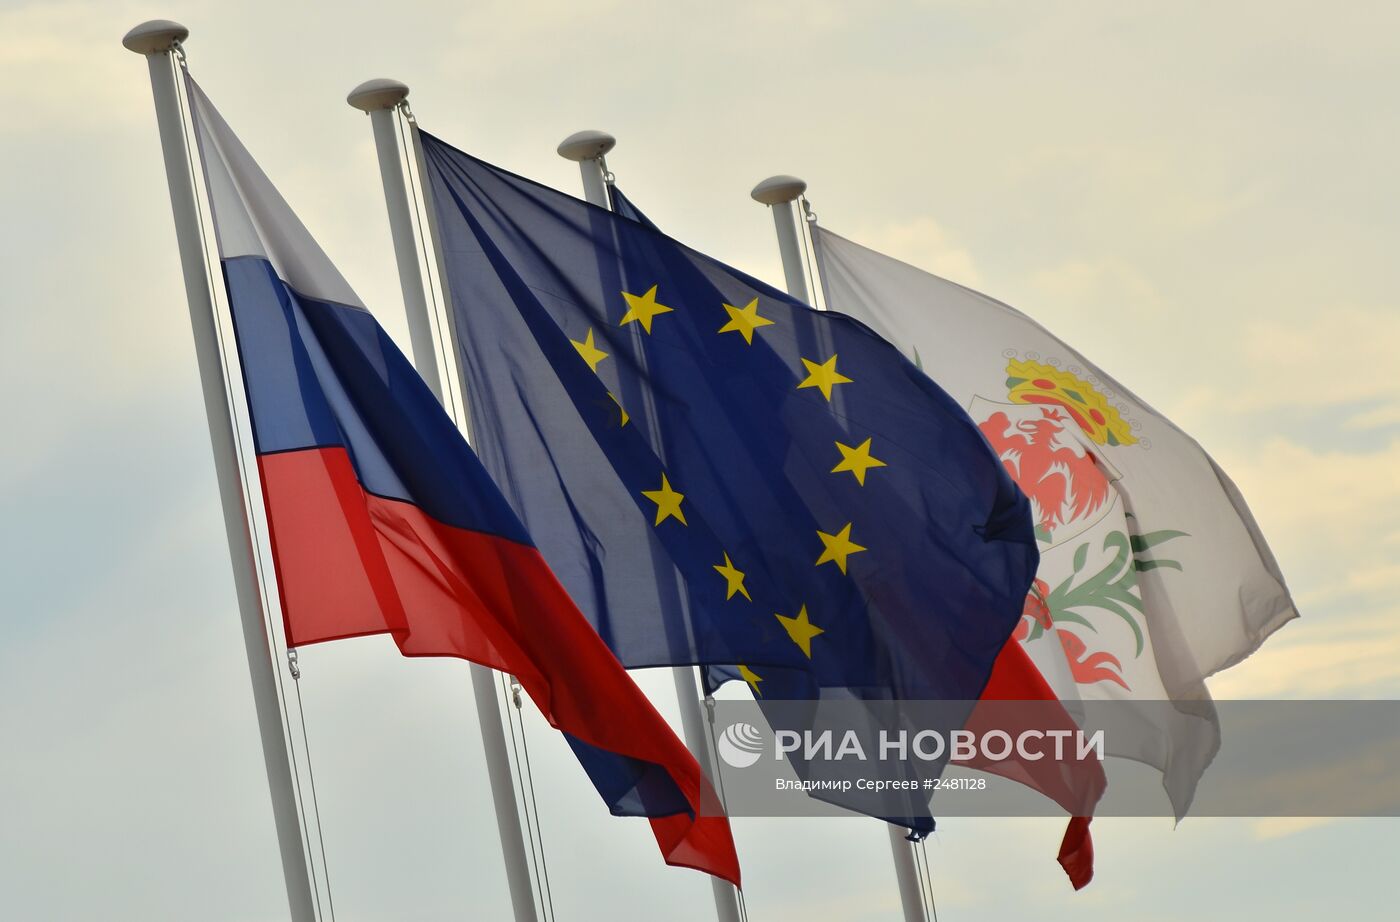 Флаги России, ЕС, Франции и герб Ниццы на набережной Ниццы